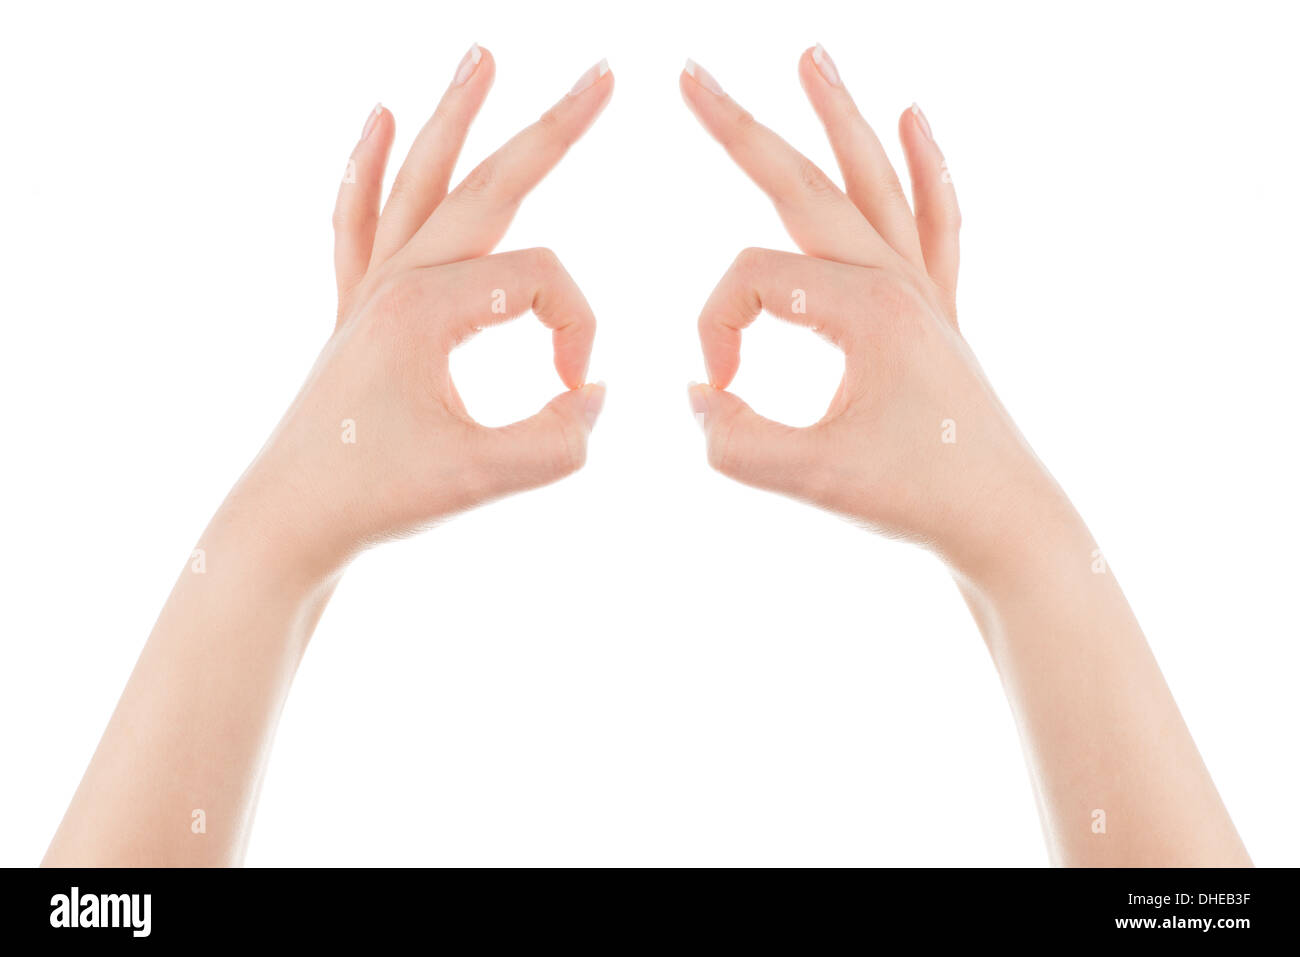 Frauenhand bilden die Maske Geste auf einem weißen Hintergrund. Stockfoto